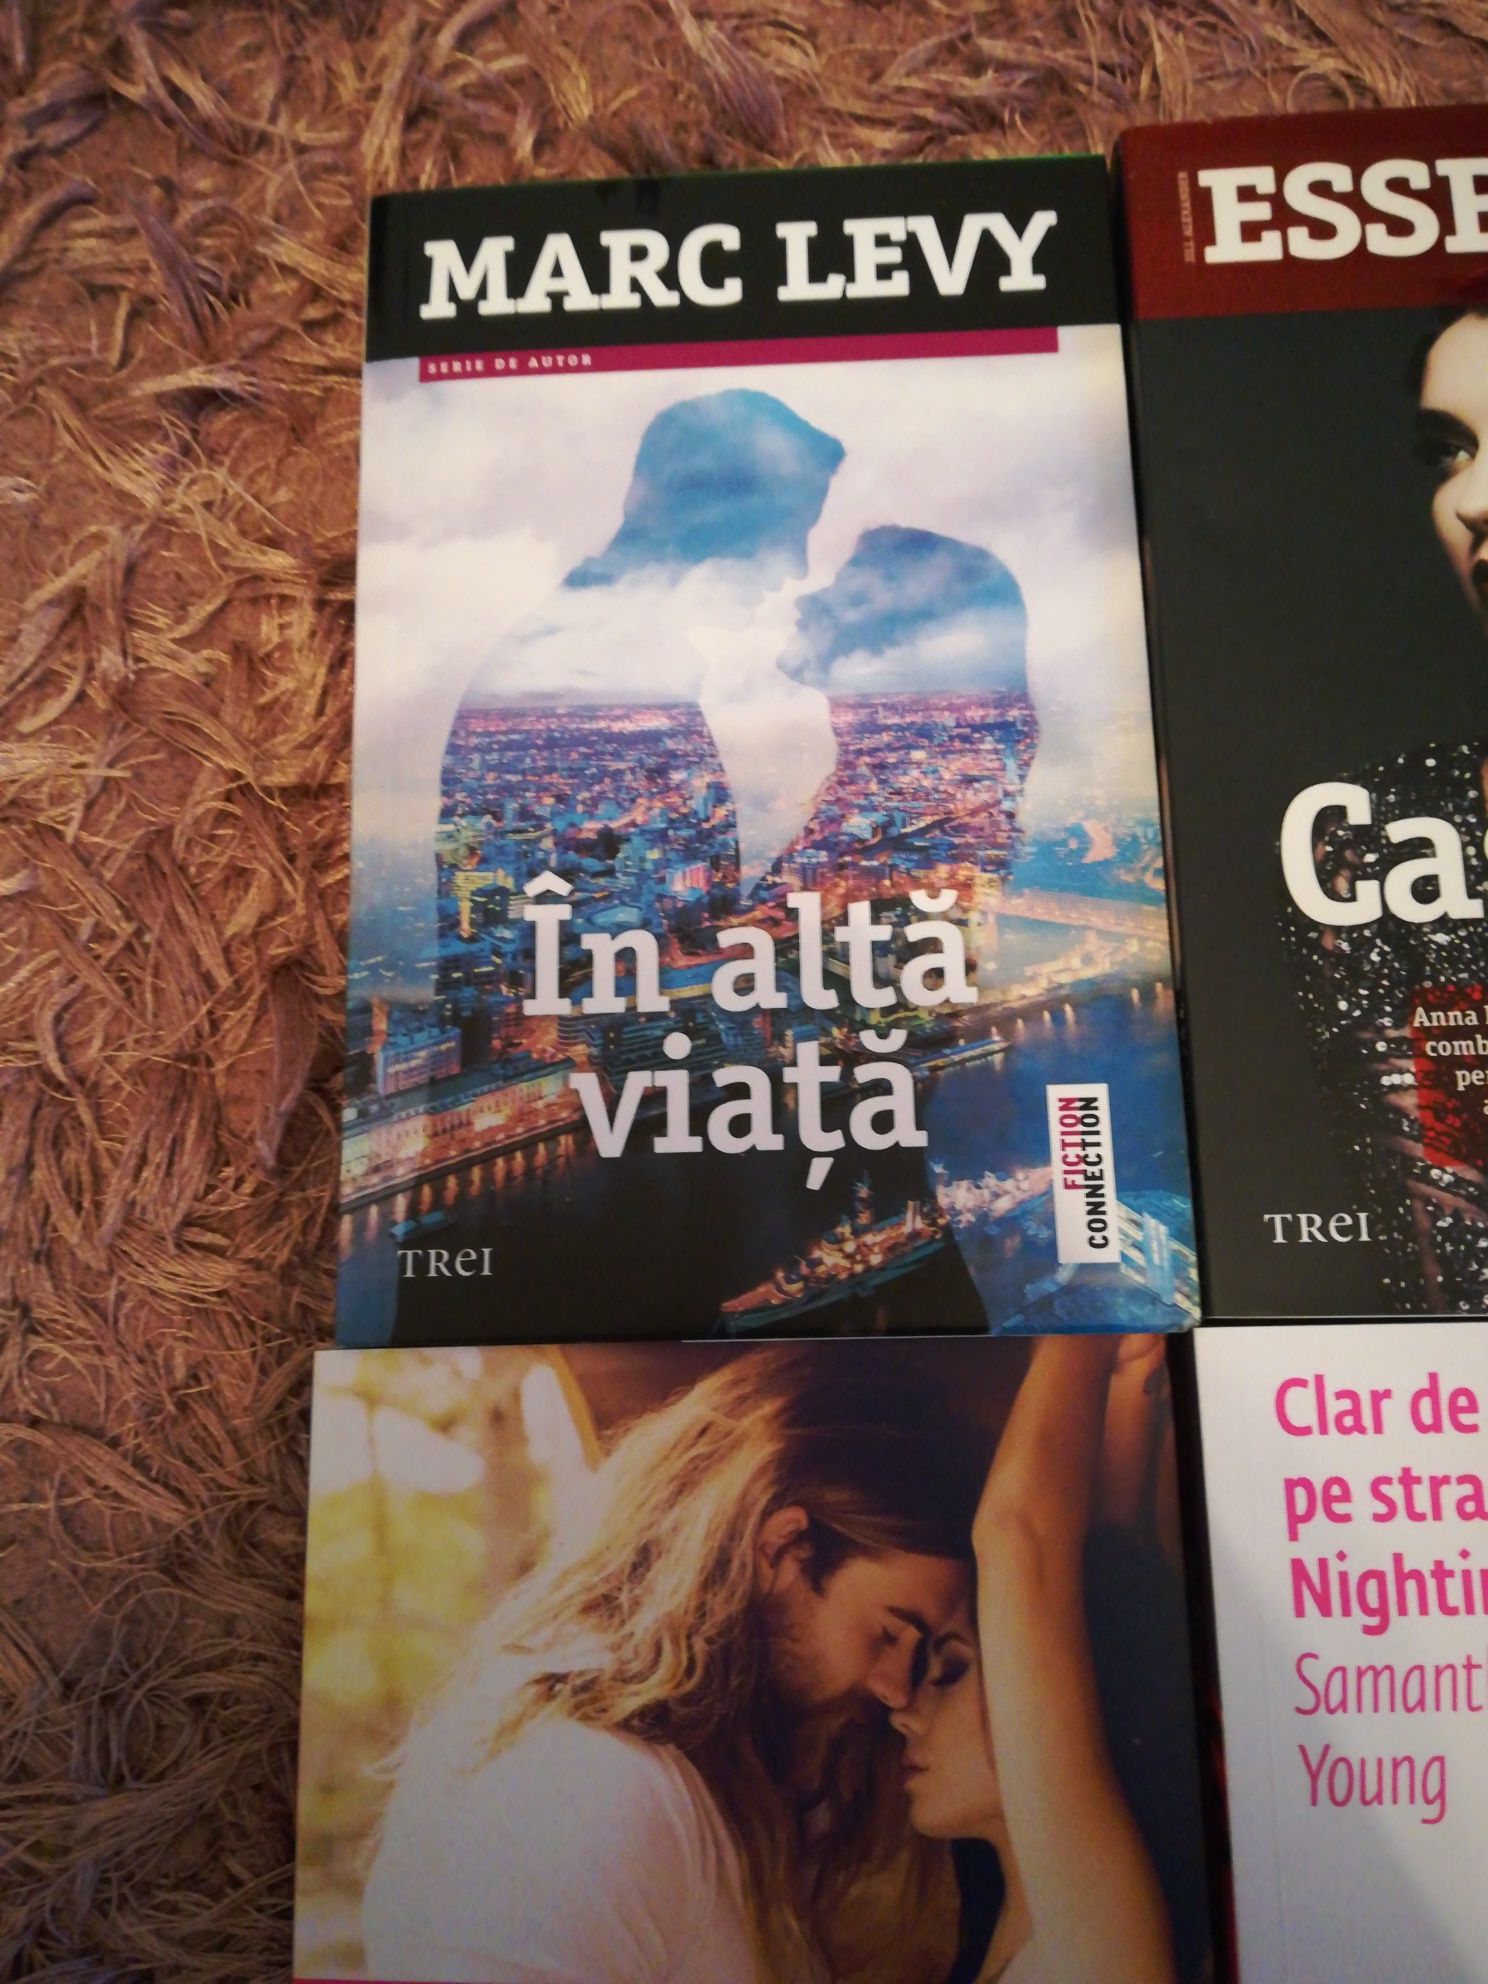 cărți de dragoste, Marc levy,samantha Young, essbaum